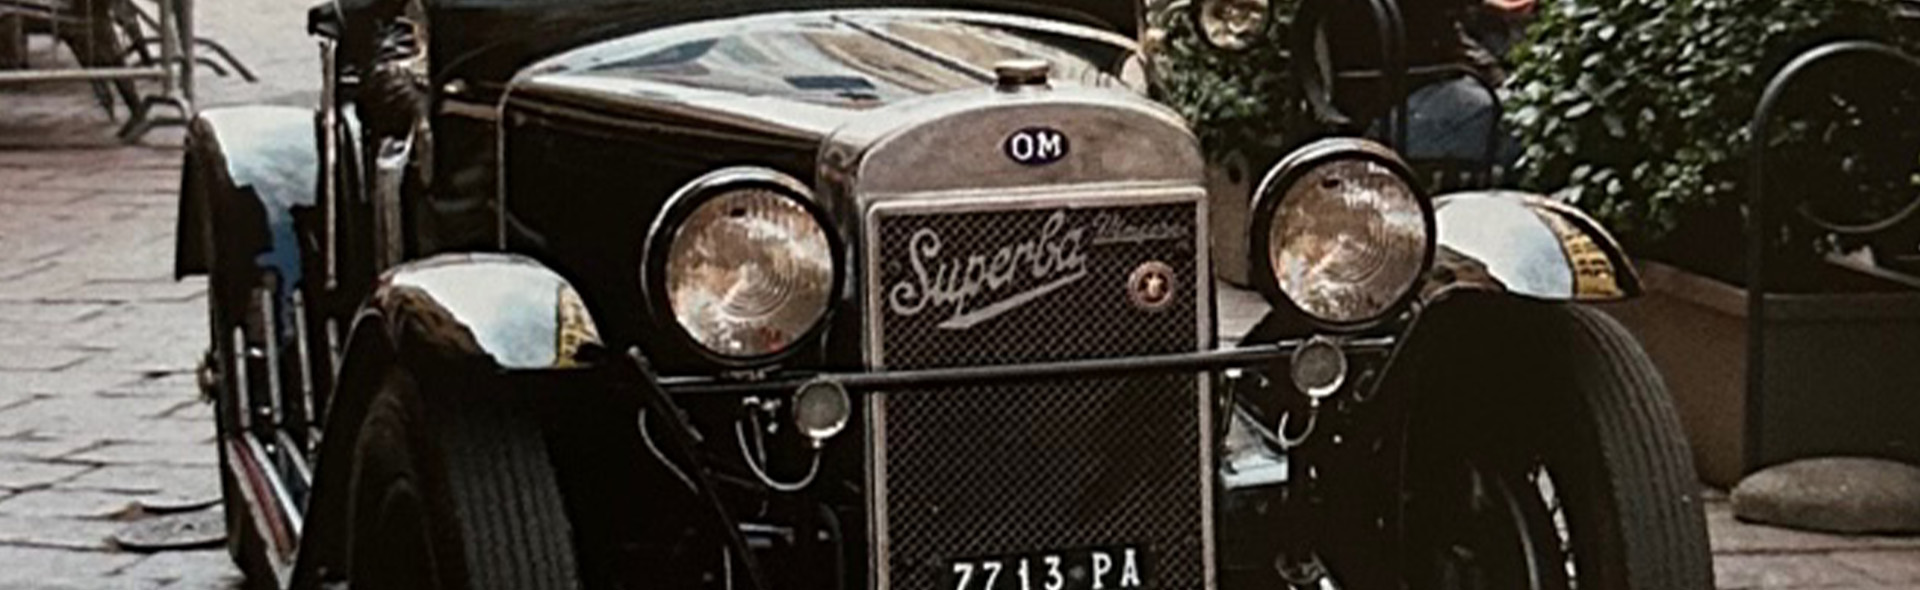 OM 665 Superba MM from 1930